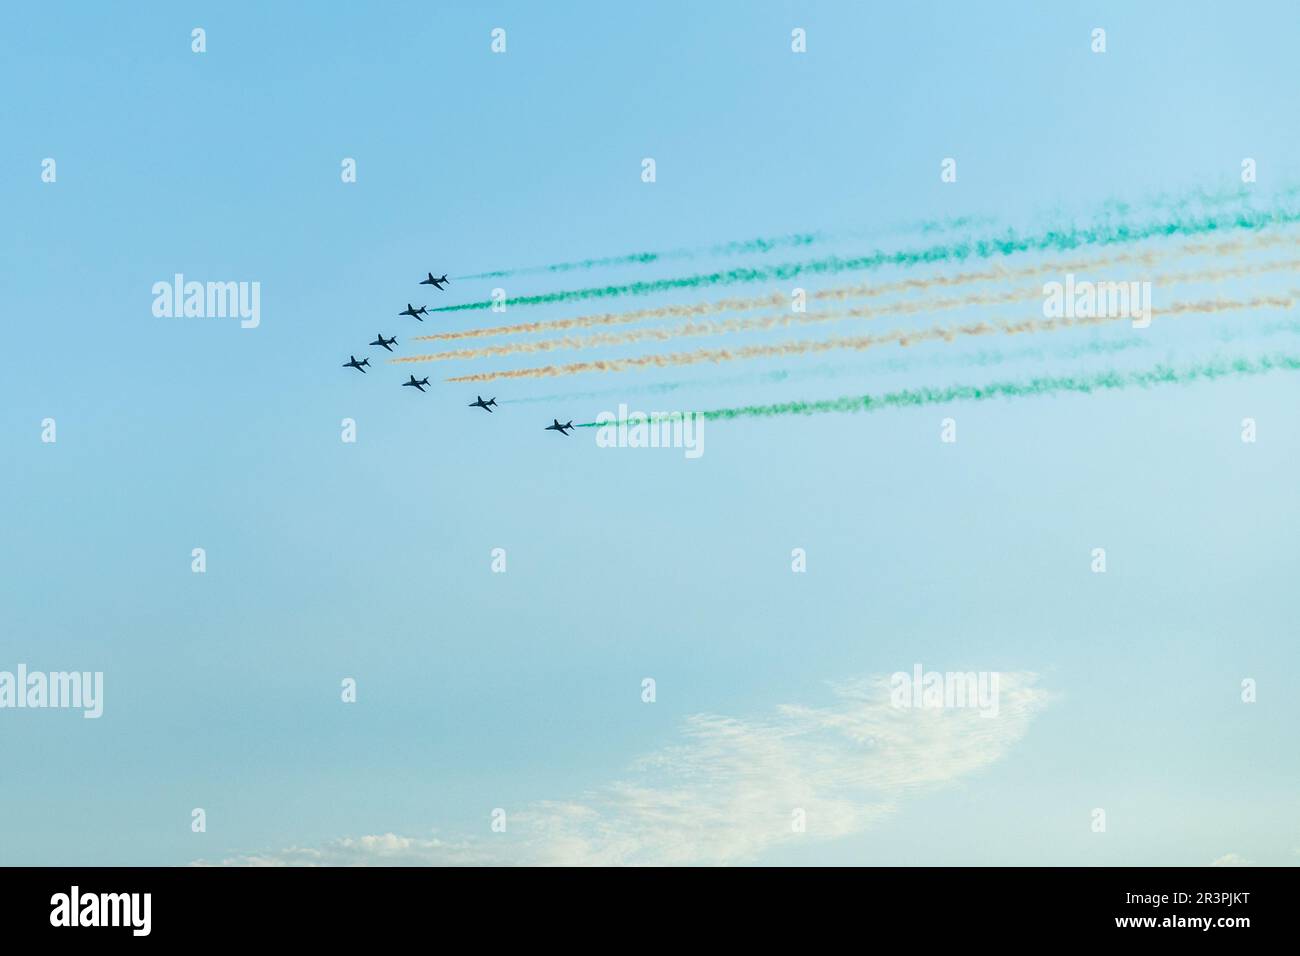 Des avions de chasse s'escadre avec des traces aux couleurs du drapeau national saoudien, au spectacle aérien de Jeddah Banque D'Images